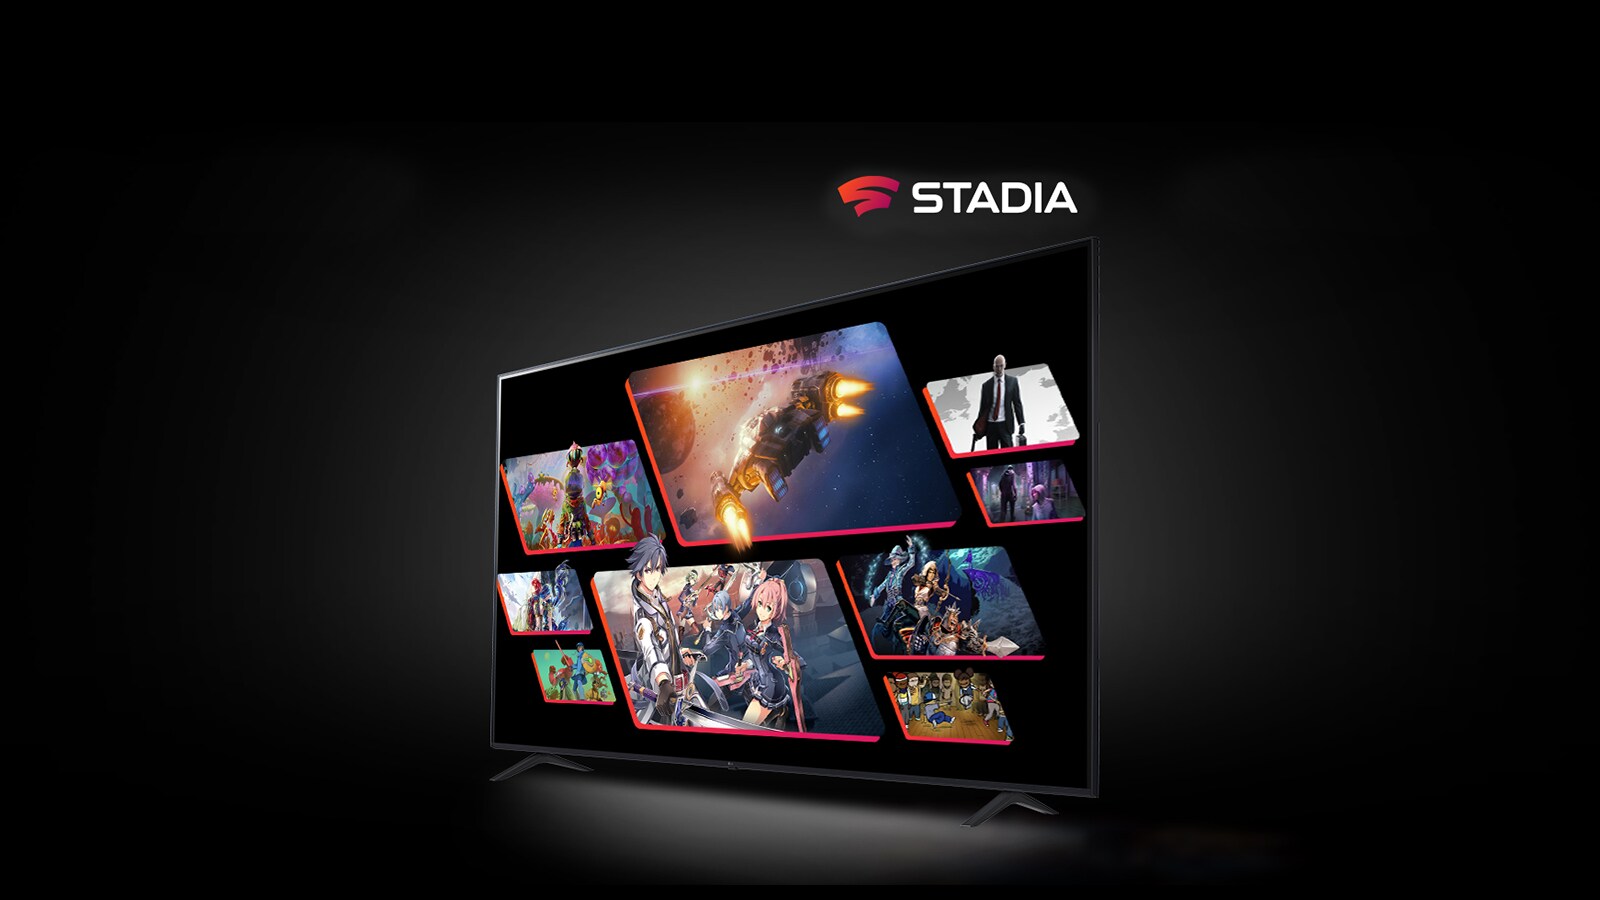 Obrázok STADIA na oddelených televízoroch LG s rozlíšením UHD, ktoré zobrazujú programy a hry.